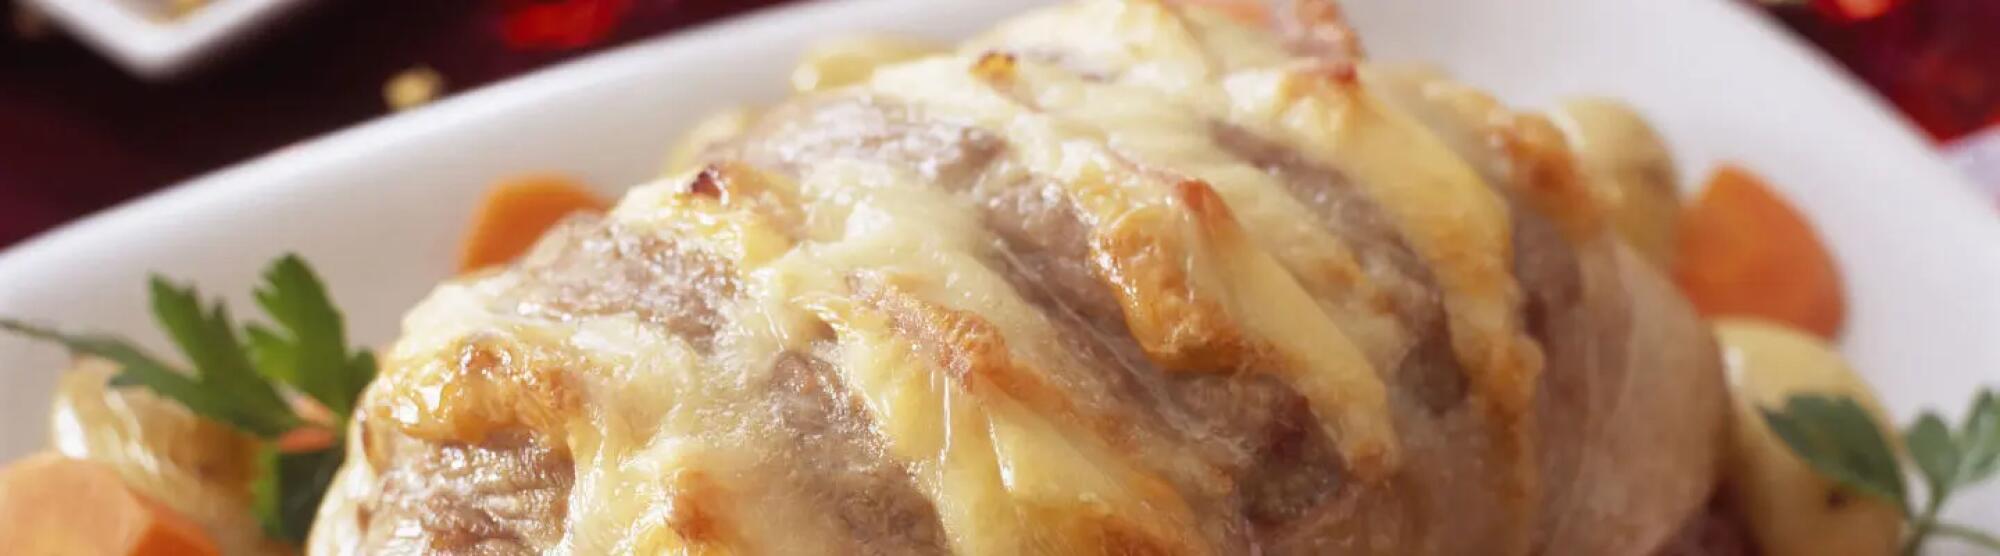 Recette : Rôti de porc au bacon et fromage à raclette